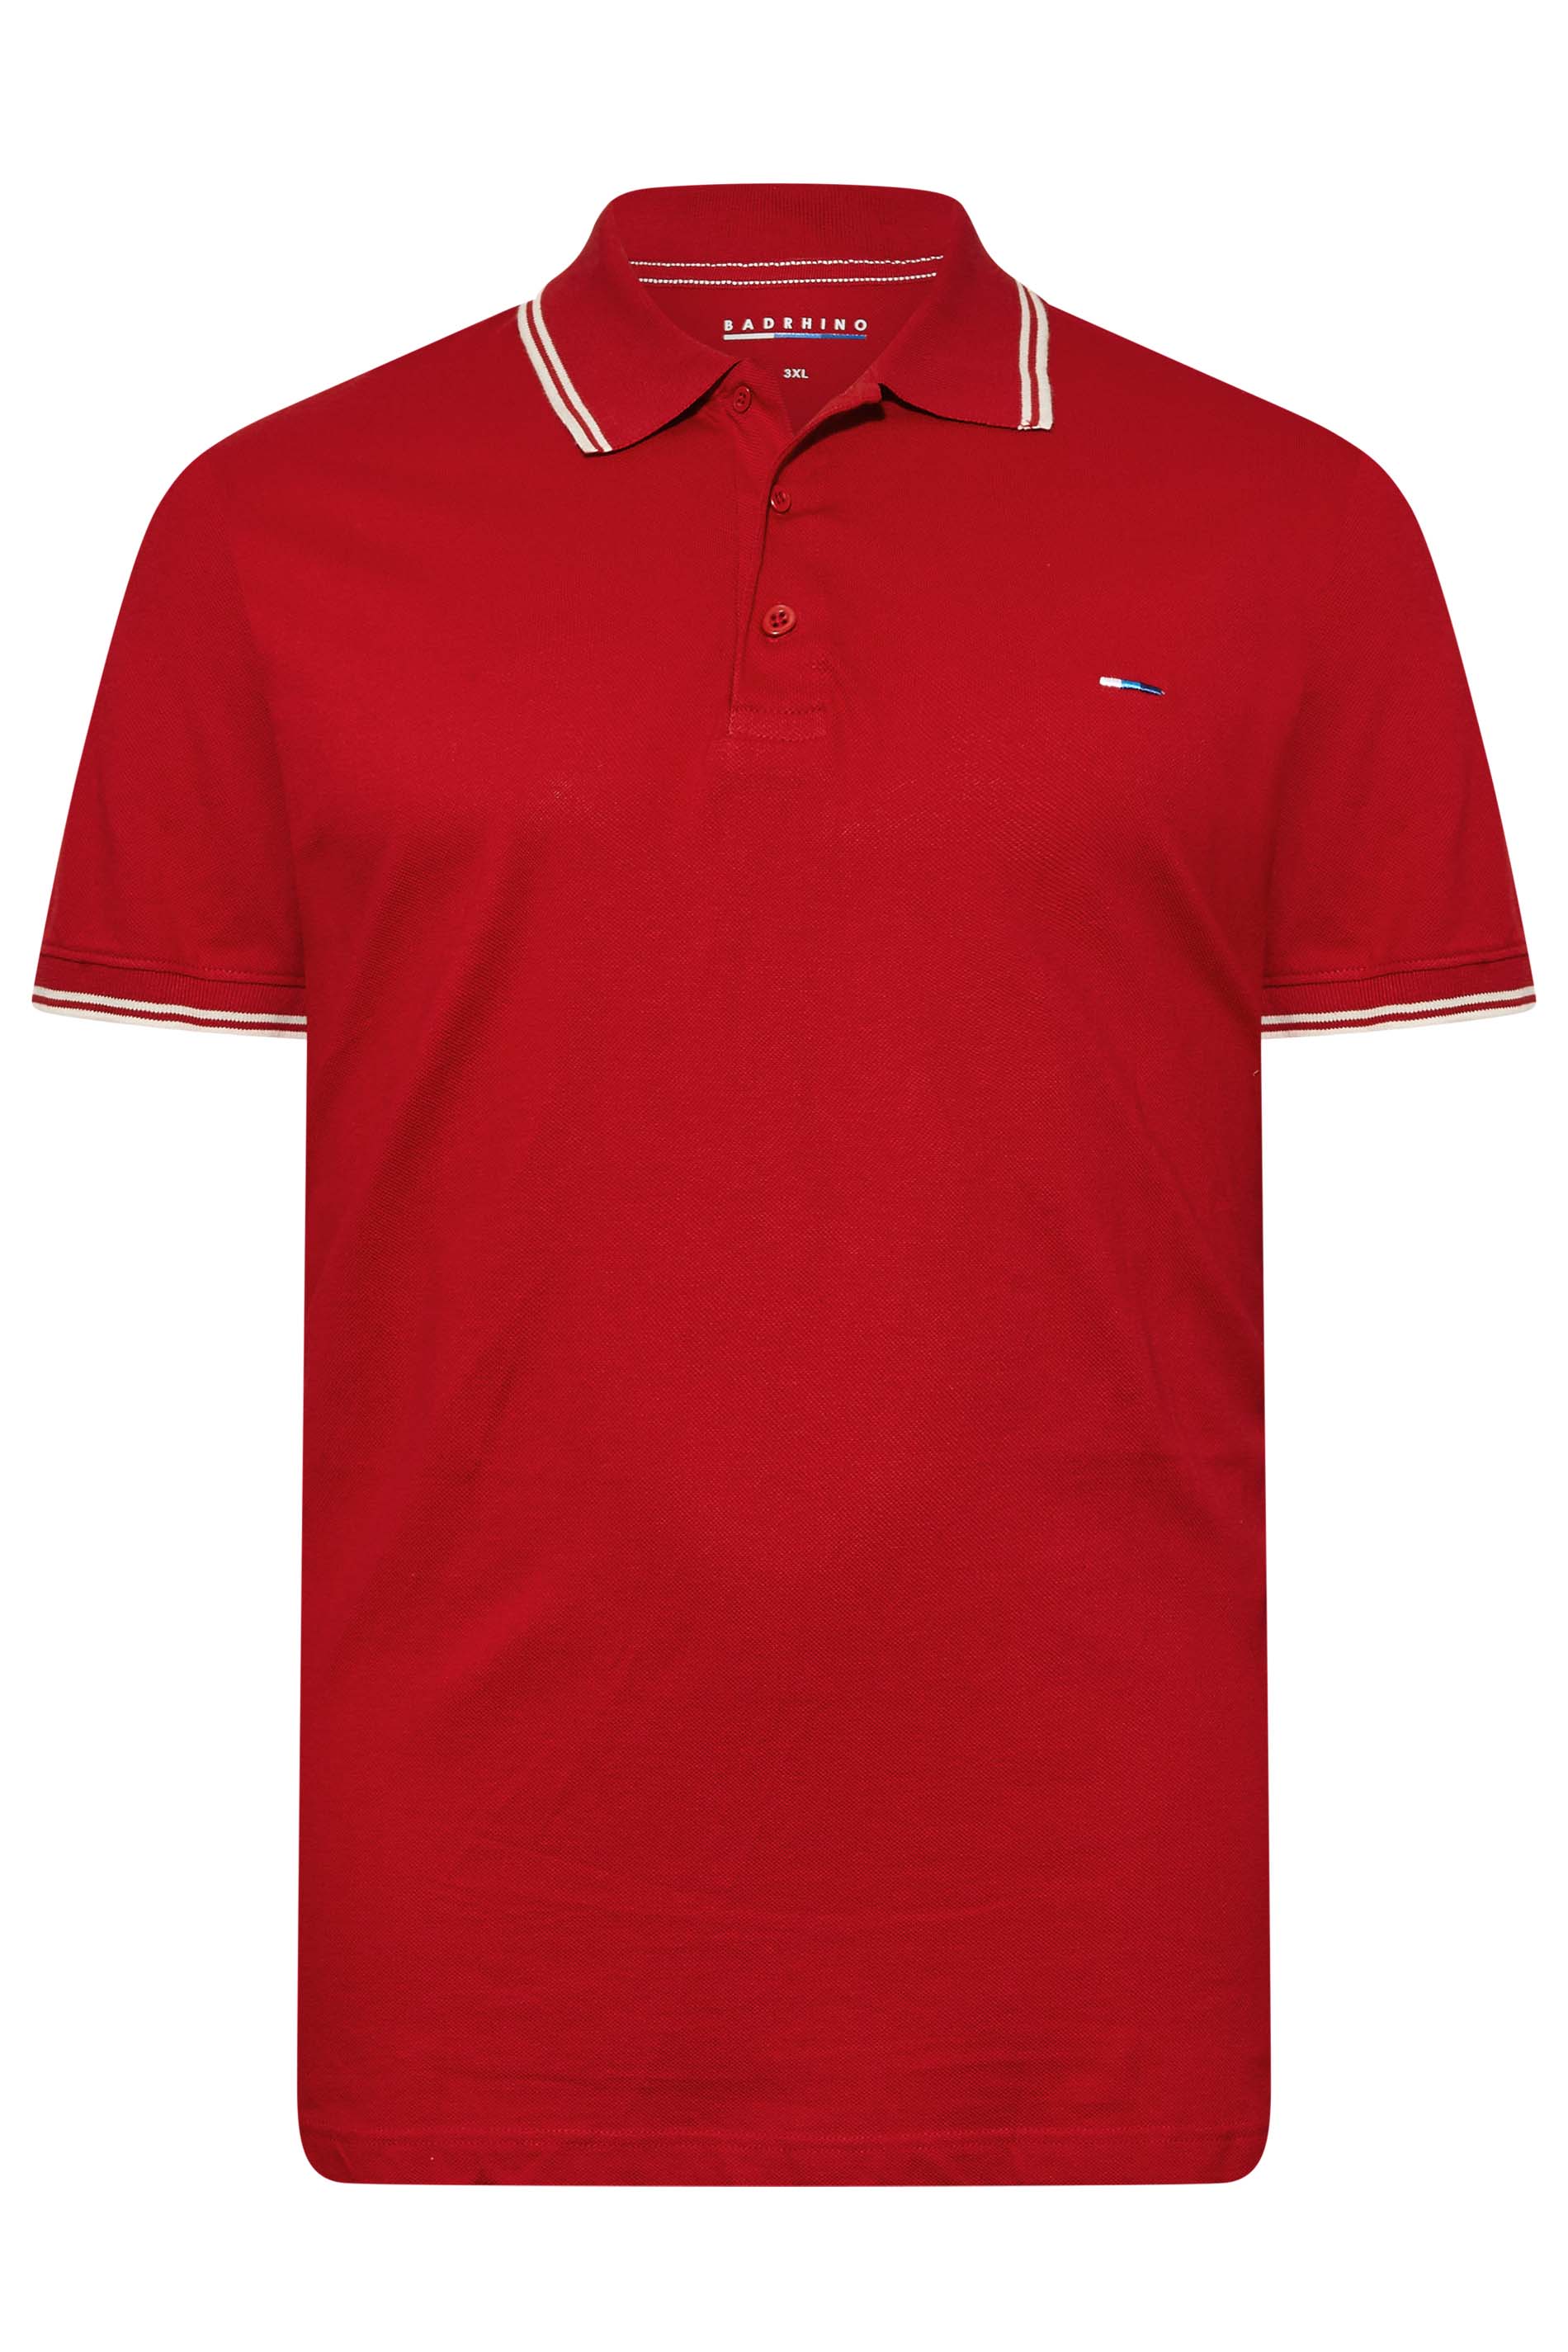 BadRhino Red Essential Tipped Polo Shirt | BadRhino 3